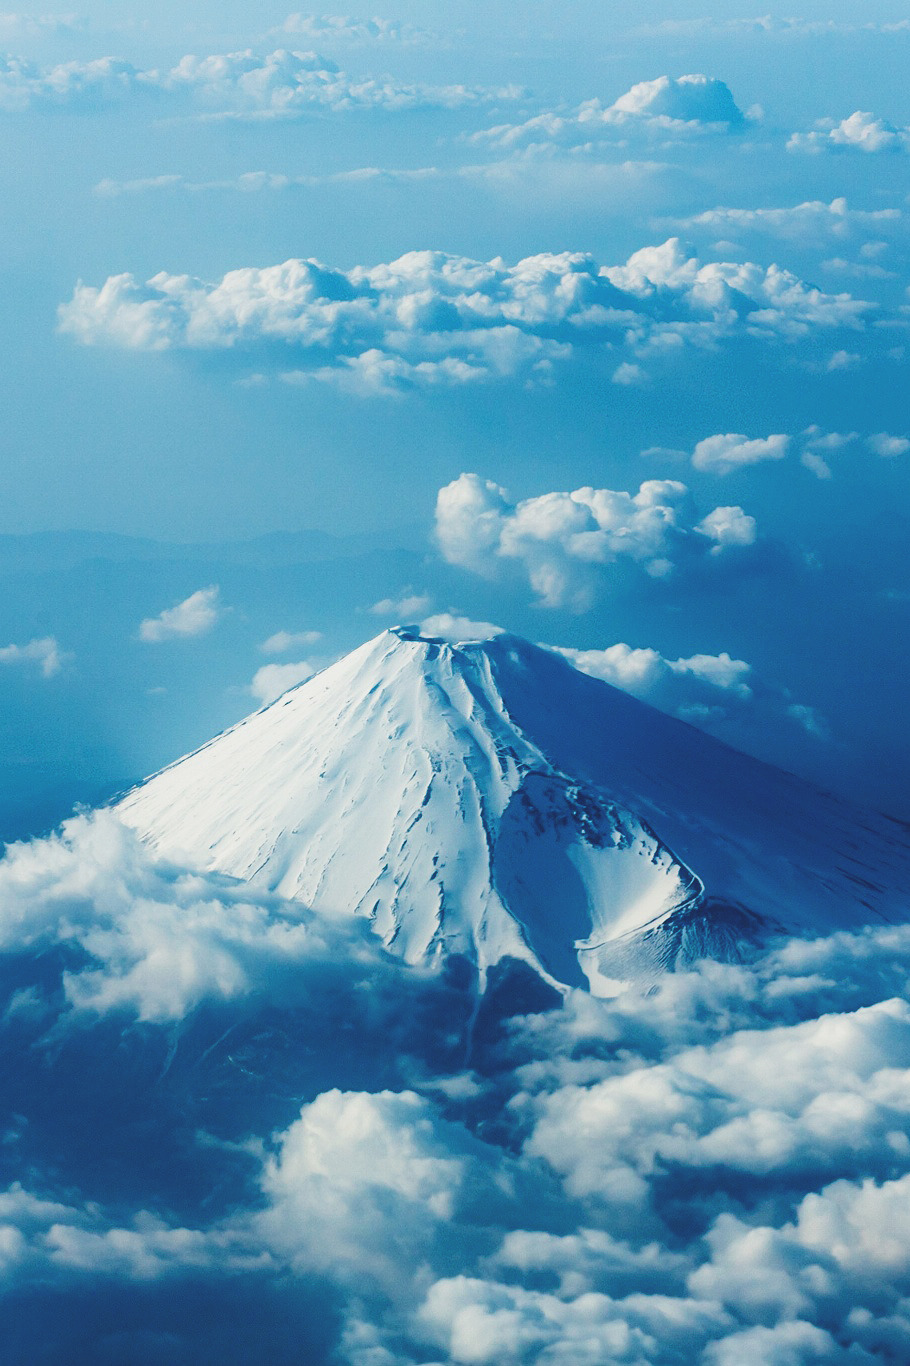 Mt. Fuji, Japan  toshio kawai